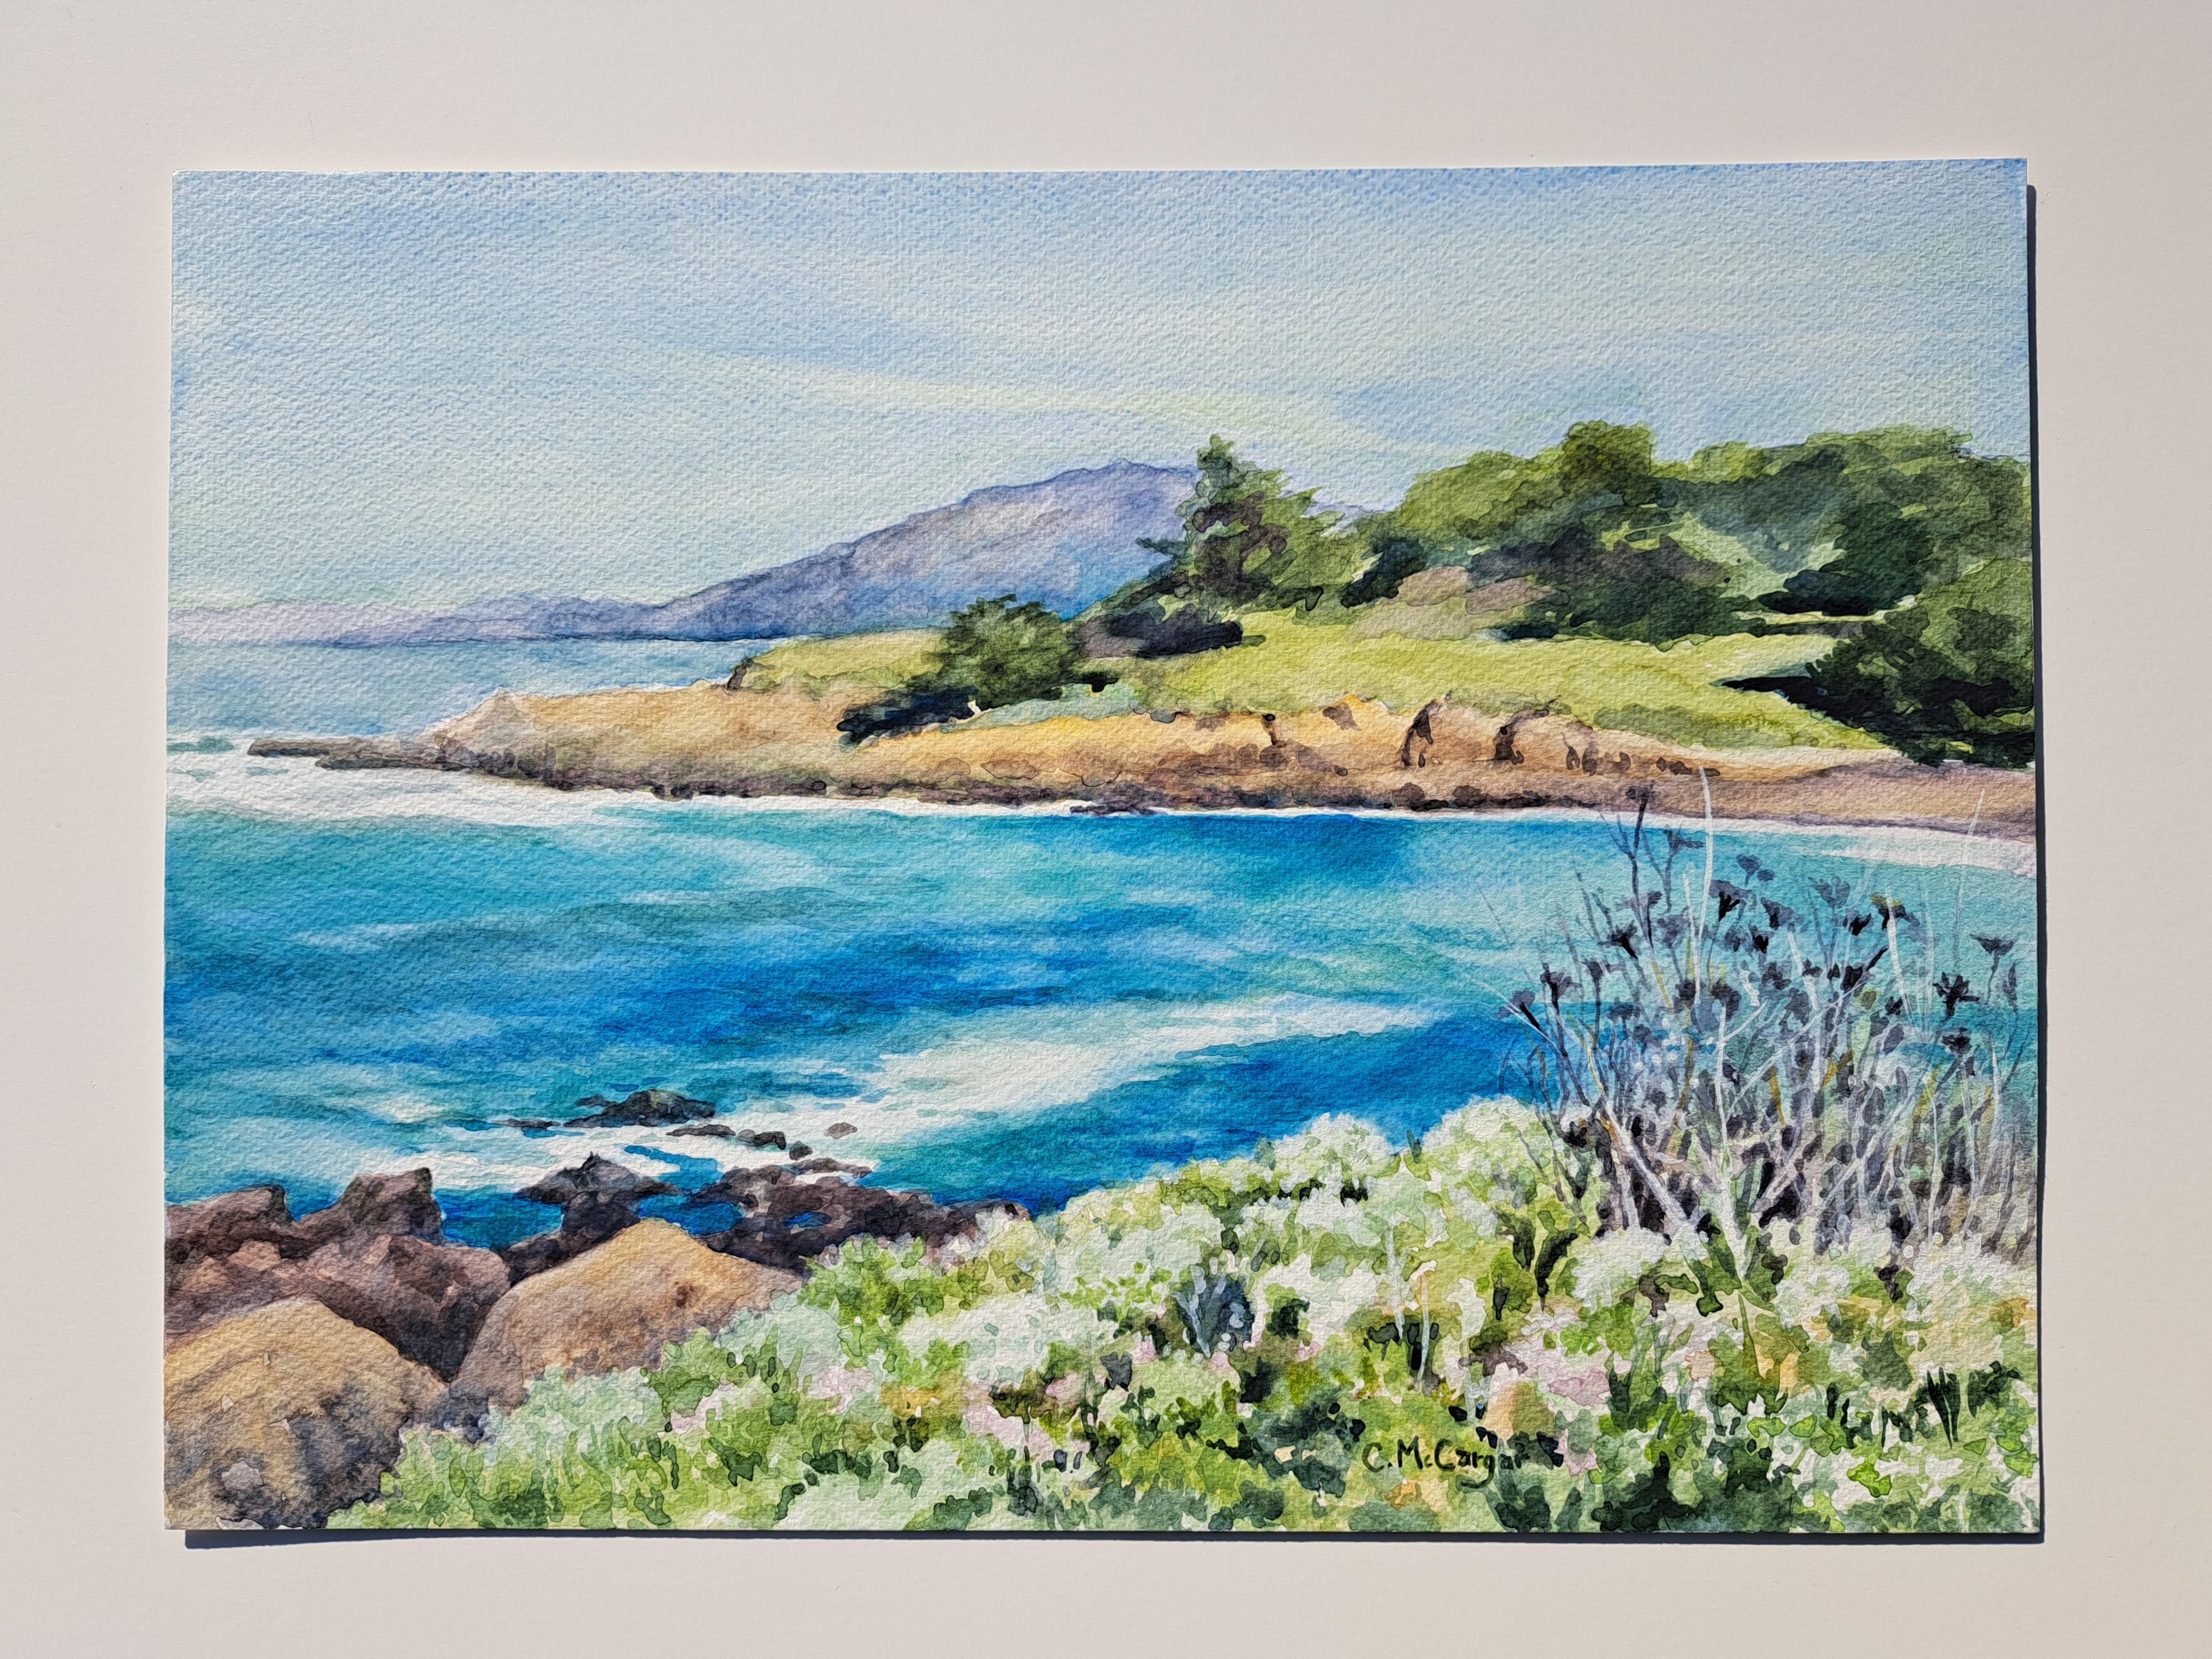 <p>Kommentare des Künstlers<br>Die Künstlerin Catherine McCargar zeigt eine beruhigende Szene des Pazifischen Ozeans, der an der grünen Küste vorbeizieht. Belebende, schäumende Wellen gleiten rhythmisch in und aus der ruhigen Auslage. Die üppige